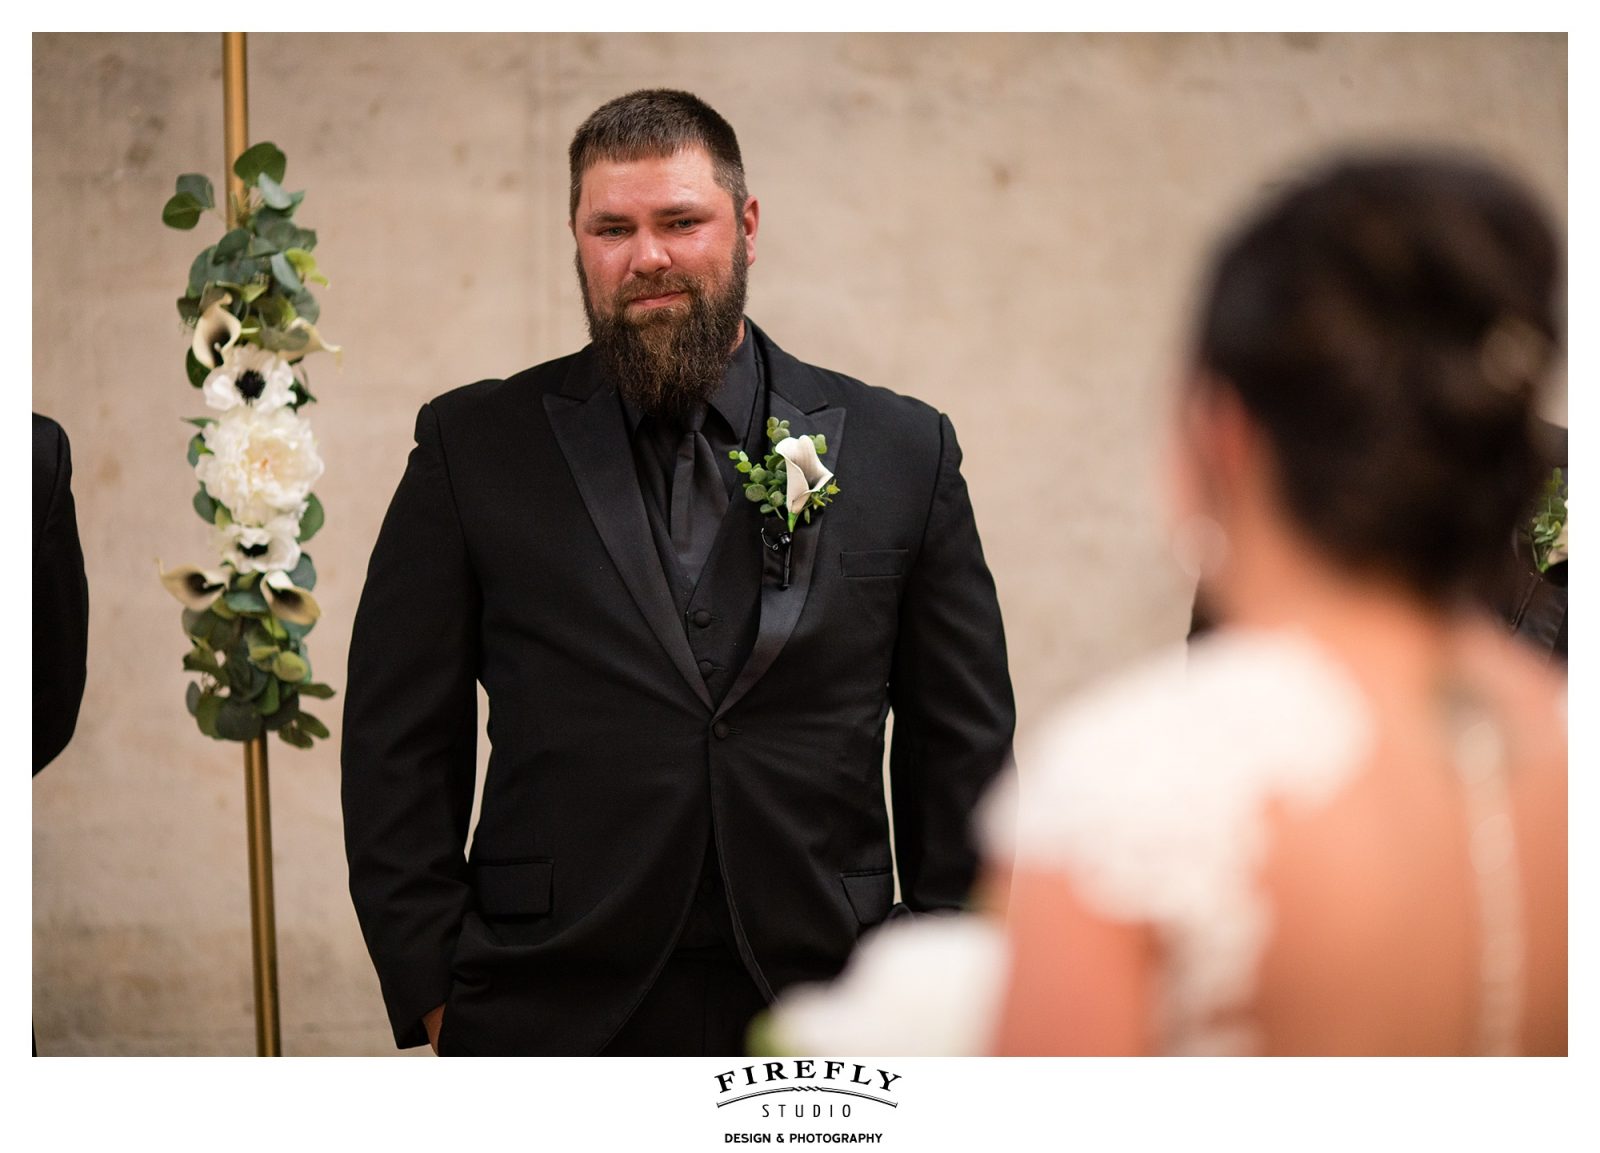 groom watching his bride walk down the aisle